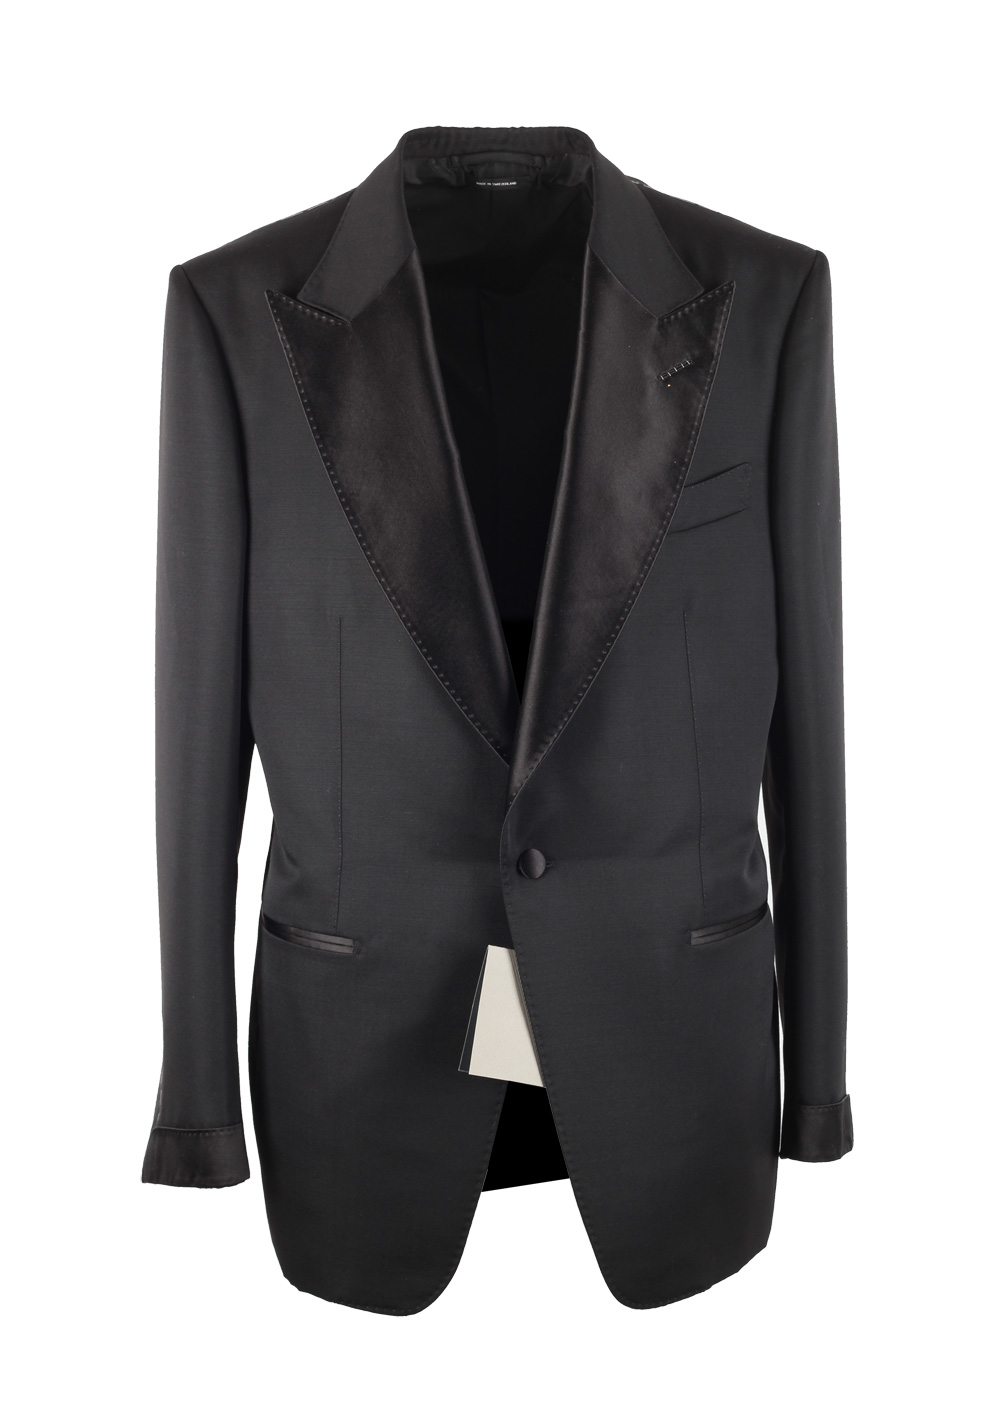 TOM FORD Atticus Black Tuxedo Smoking Suit Size 54 / 44R U.S. | Costume ...